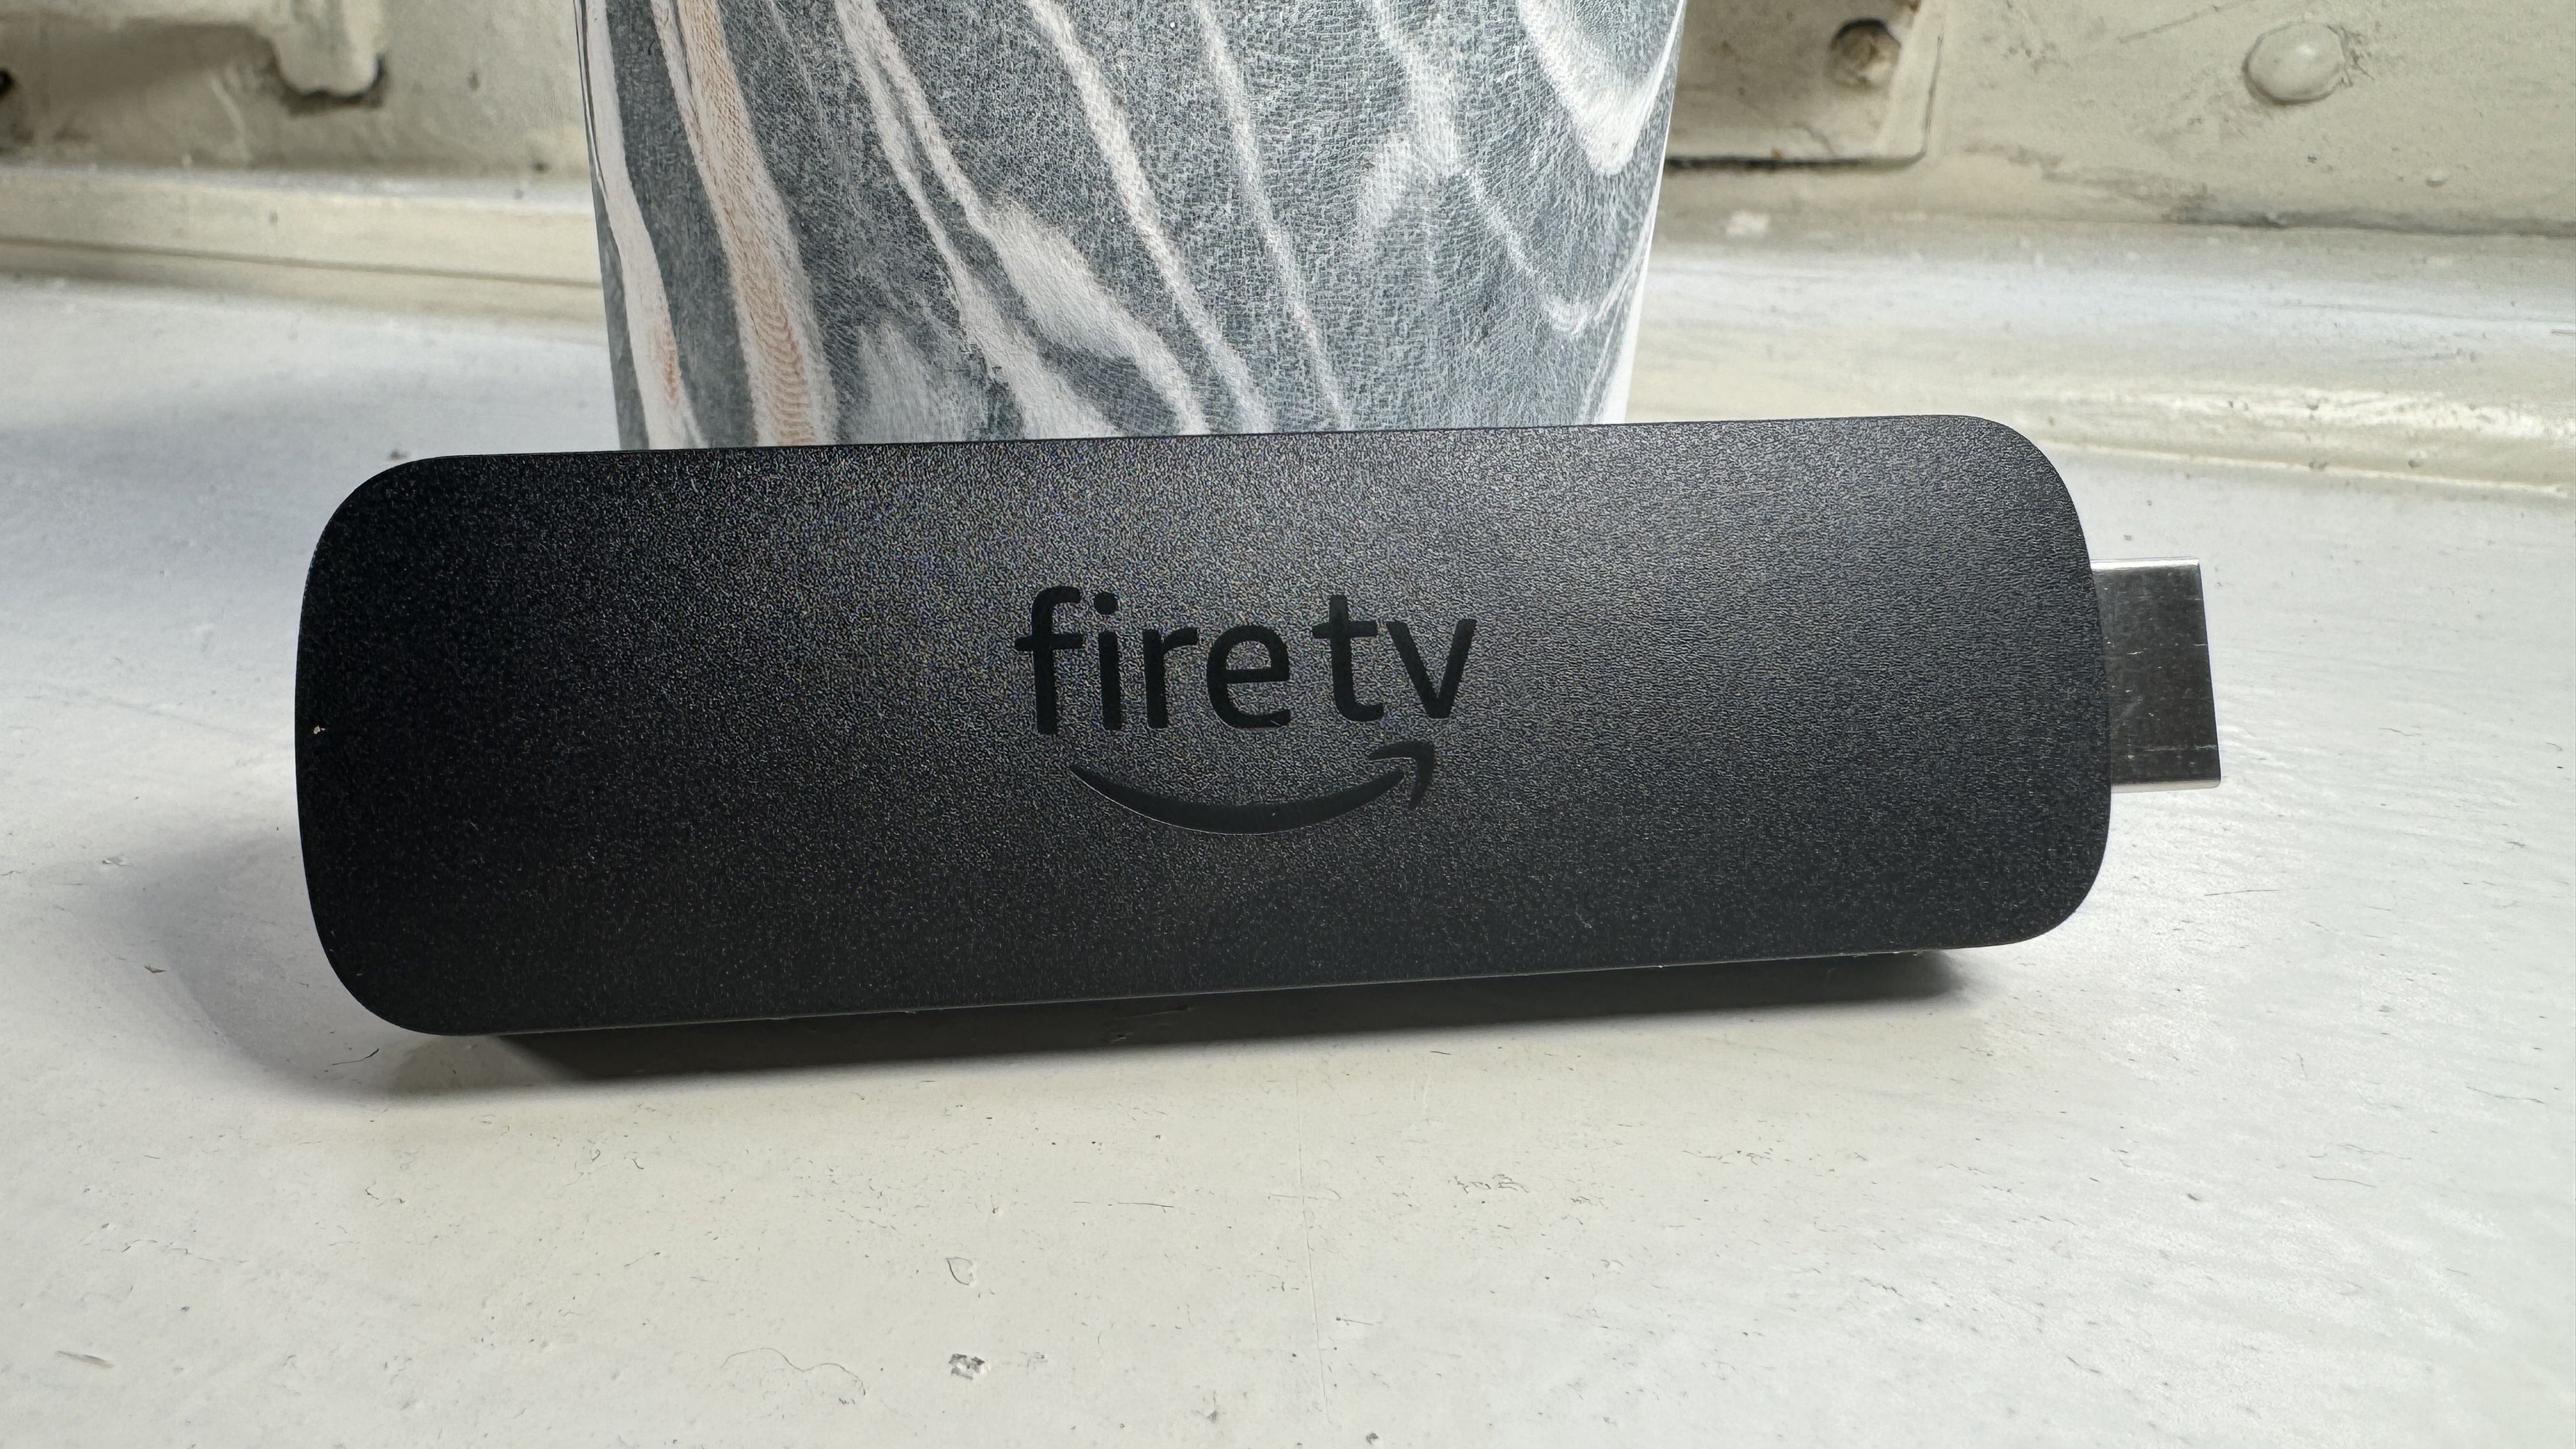 Fire TV Stick 4K 2nd Gen - an incremental update - Digital Reviews  Network